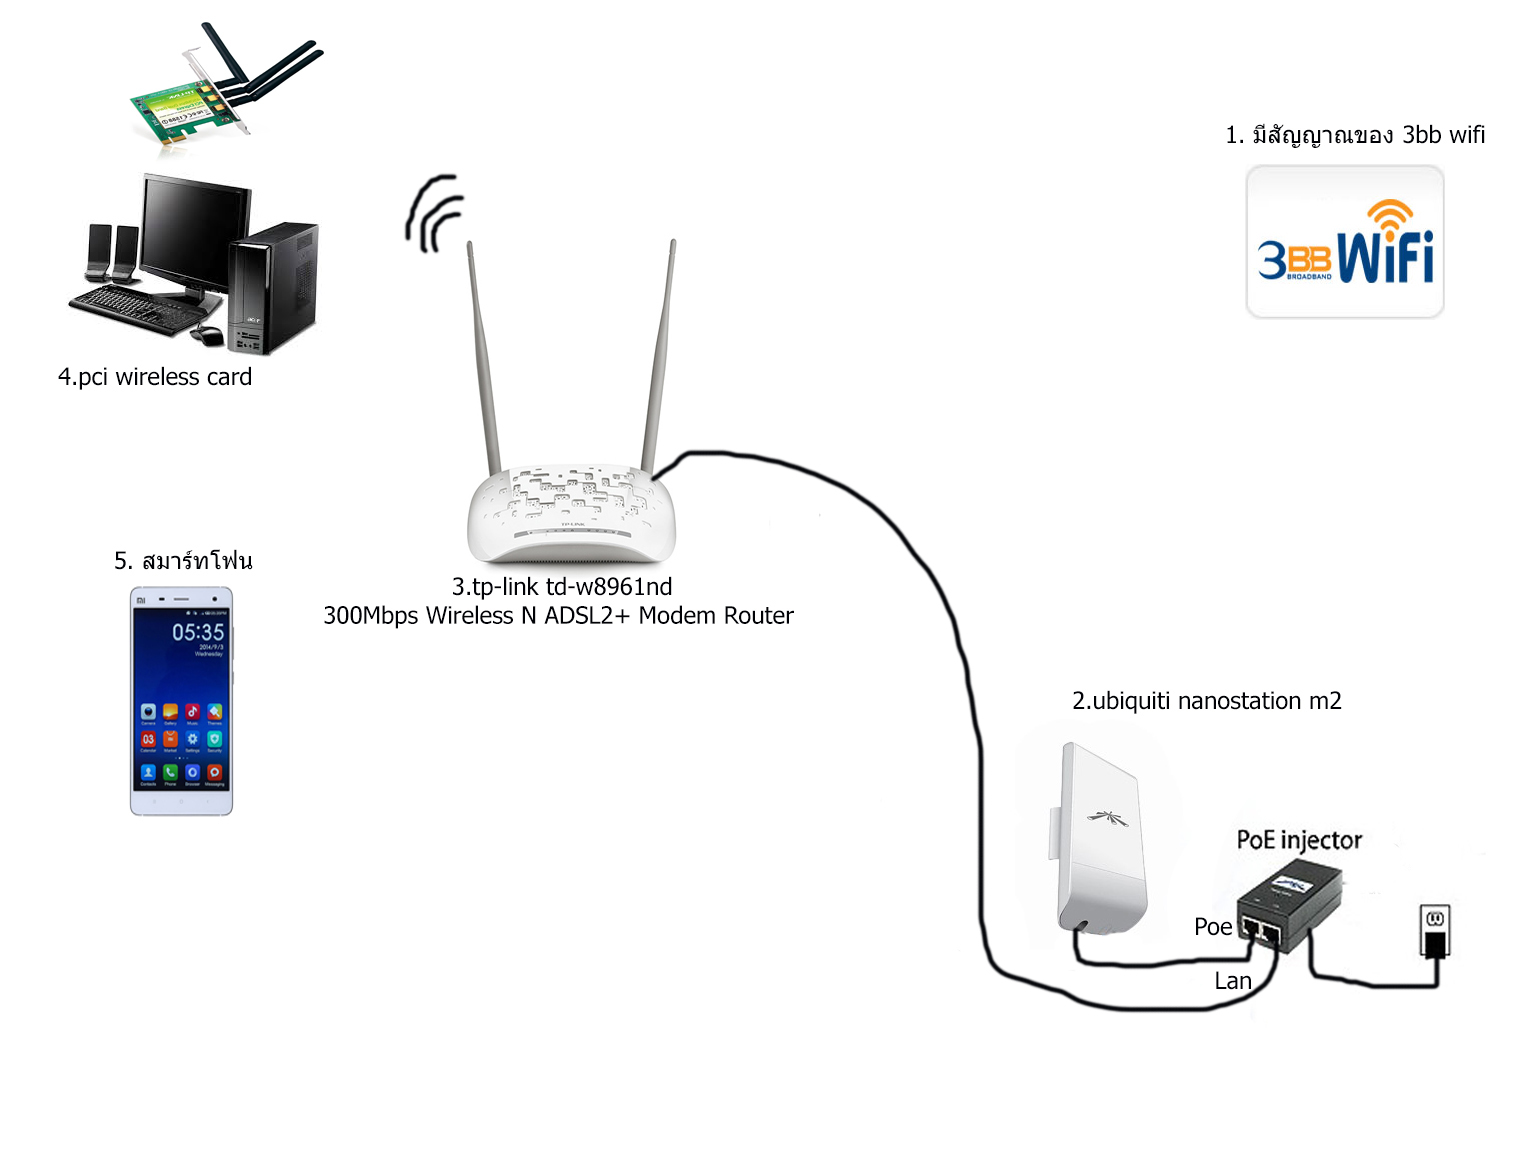 Как подключить усилитель роутера tp link. Wi-Fi роутер Ubiquiti NANOSTATION m2. Ubiquiti NANOSTATION m2 питание. Роутер повторитель WIFI схема подключения. Ubiquiti антенна WIFI NANOSTATION.